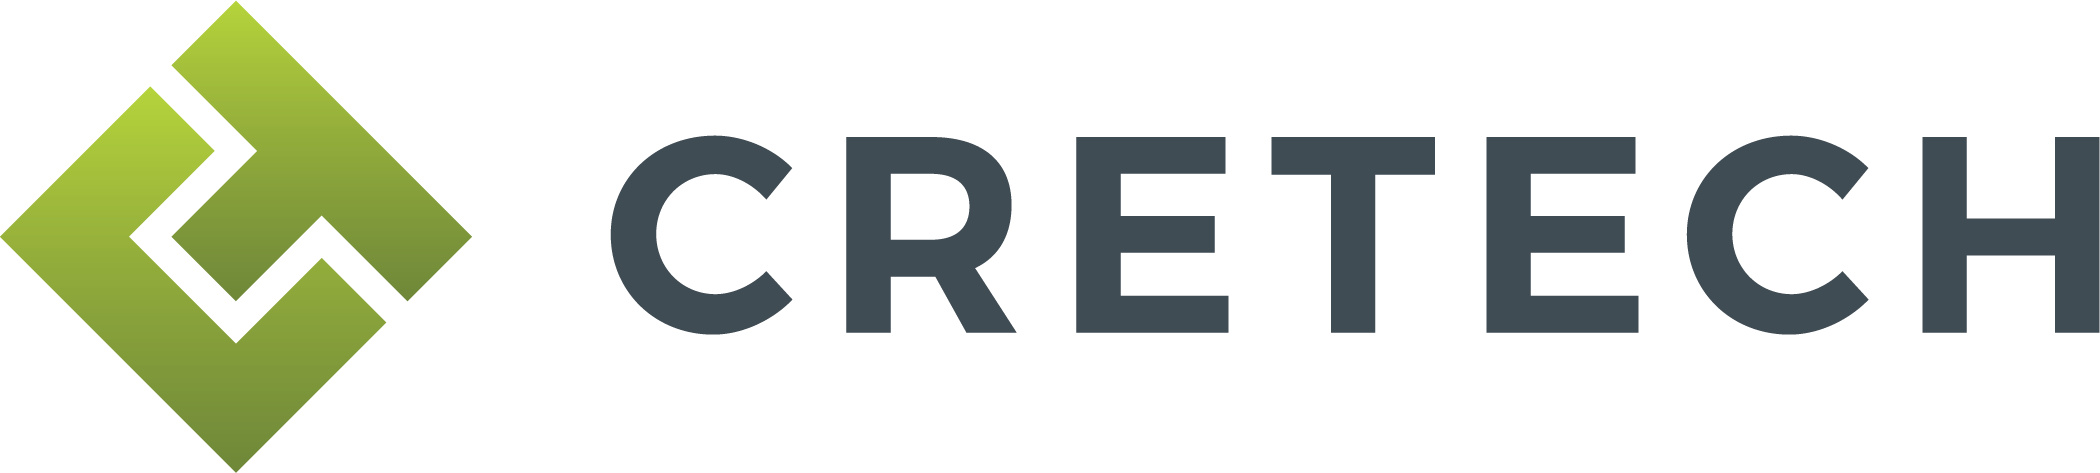 Image result for cretech logo